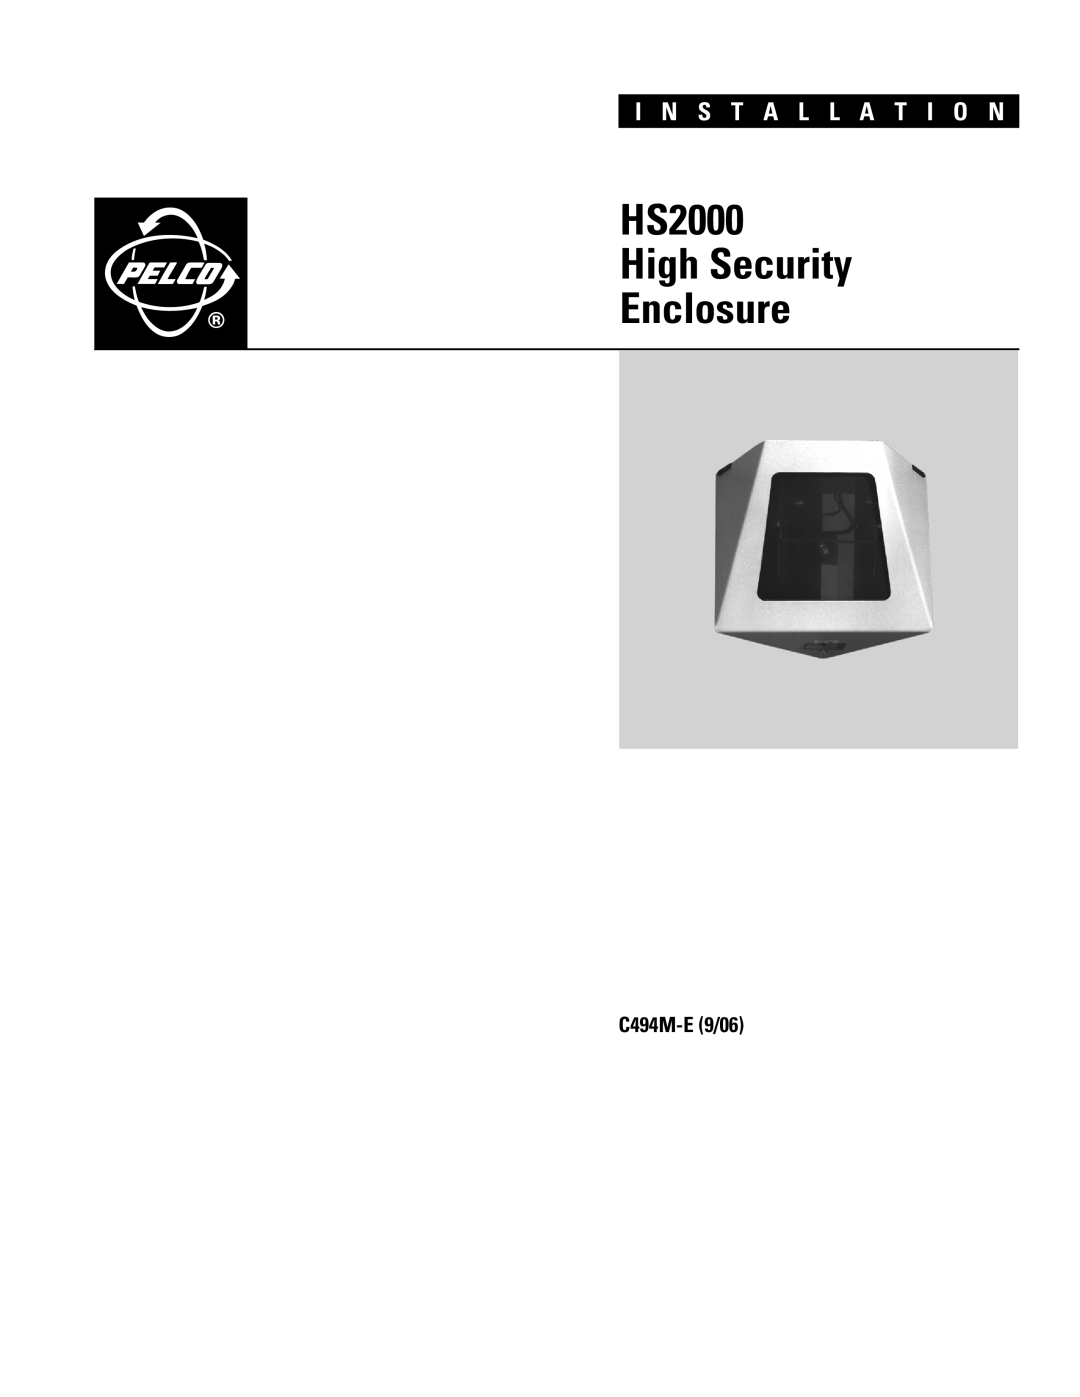 Pelco manual HS2000 High Security Enclosure, I N S T A L L A T I O N, C494M-E9/06 